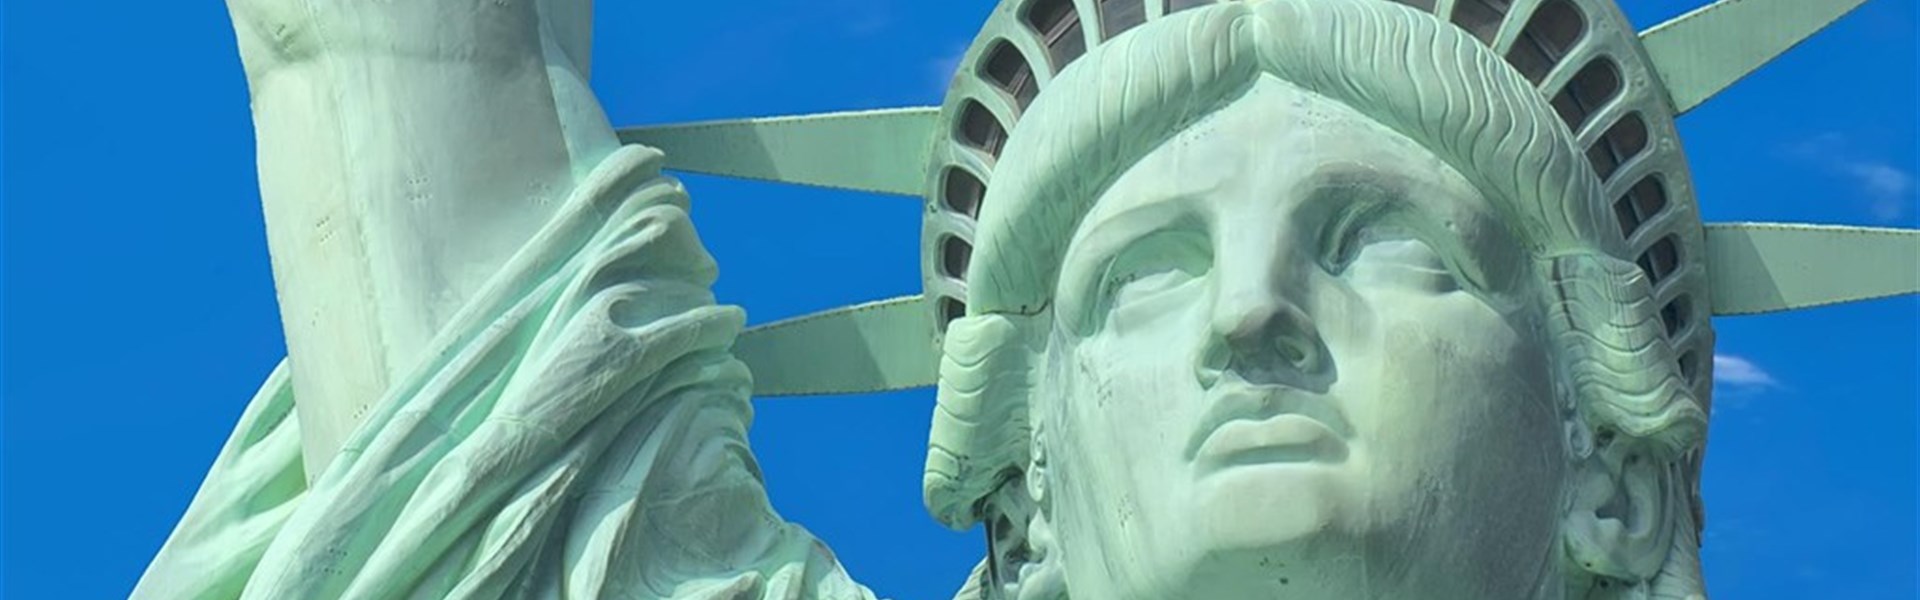 TO NEJLEPŠÍ Z NEW YORKU s českým průvodcem - USA_New York_socha svobody